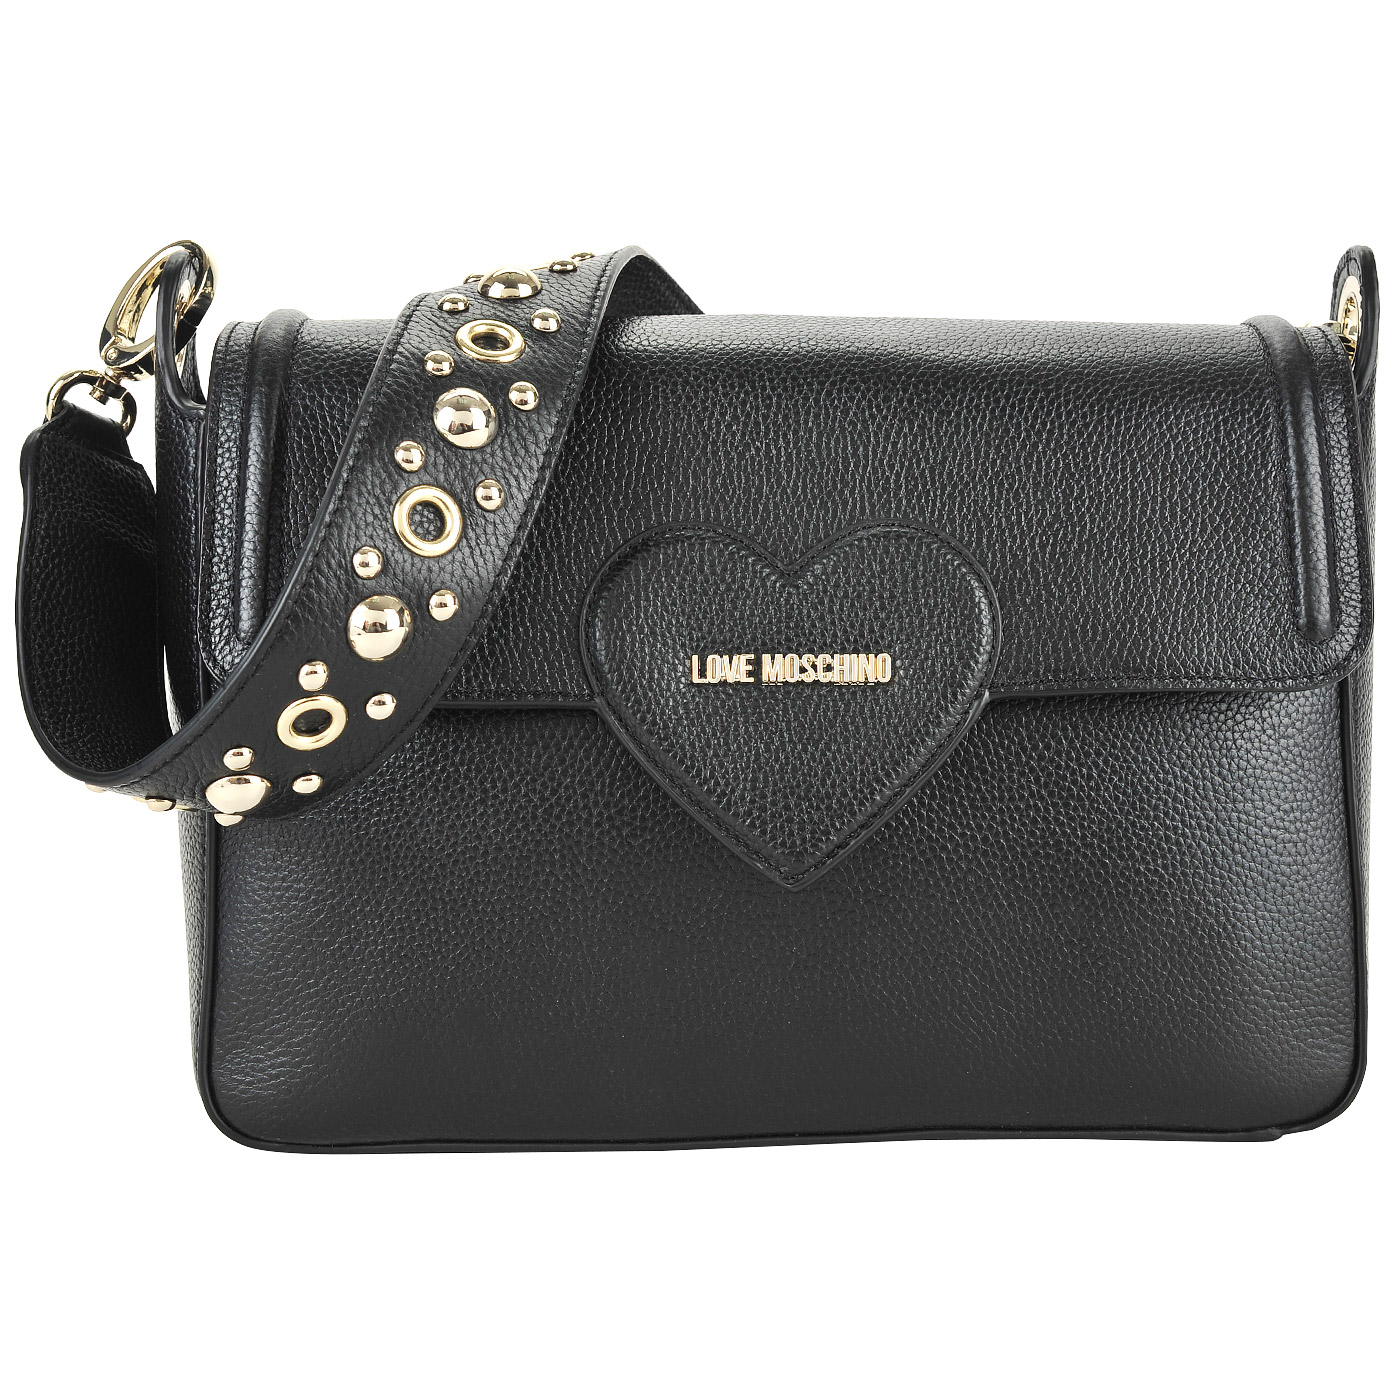 Love Moschino Черная сумка с откидным клапаном и логотипом бренда